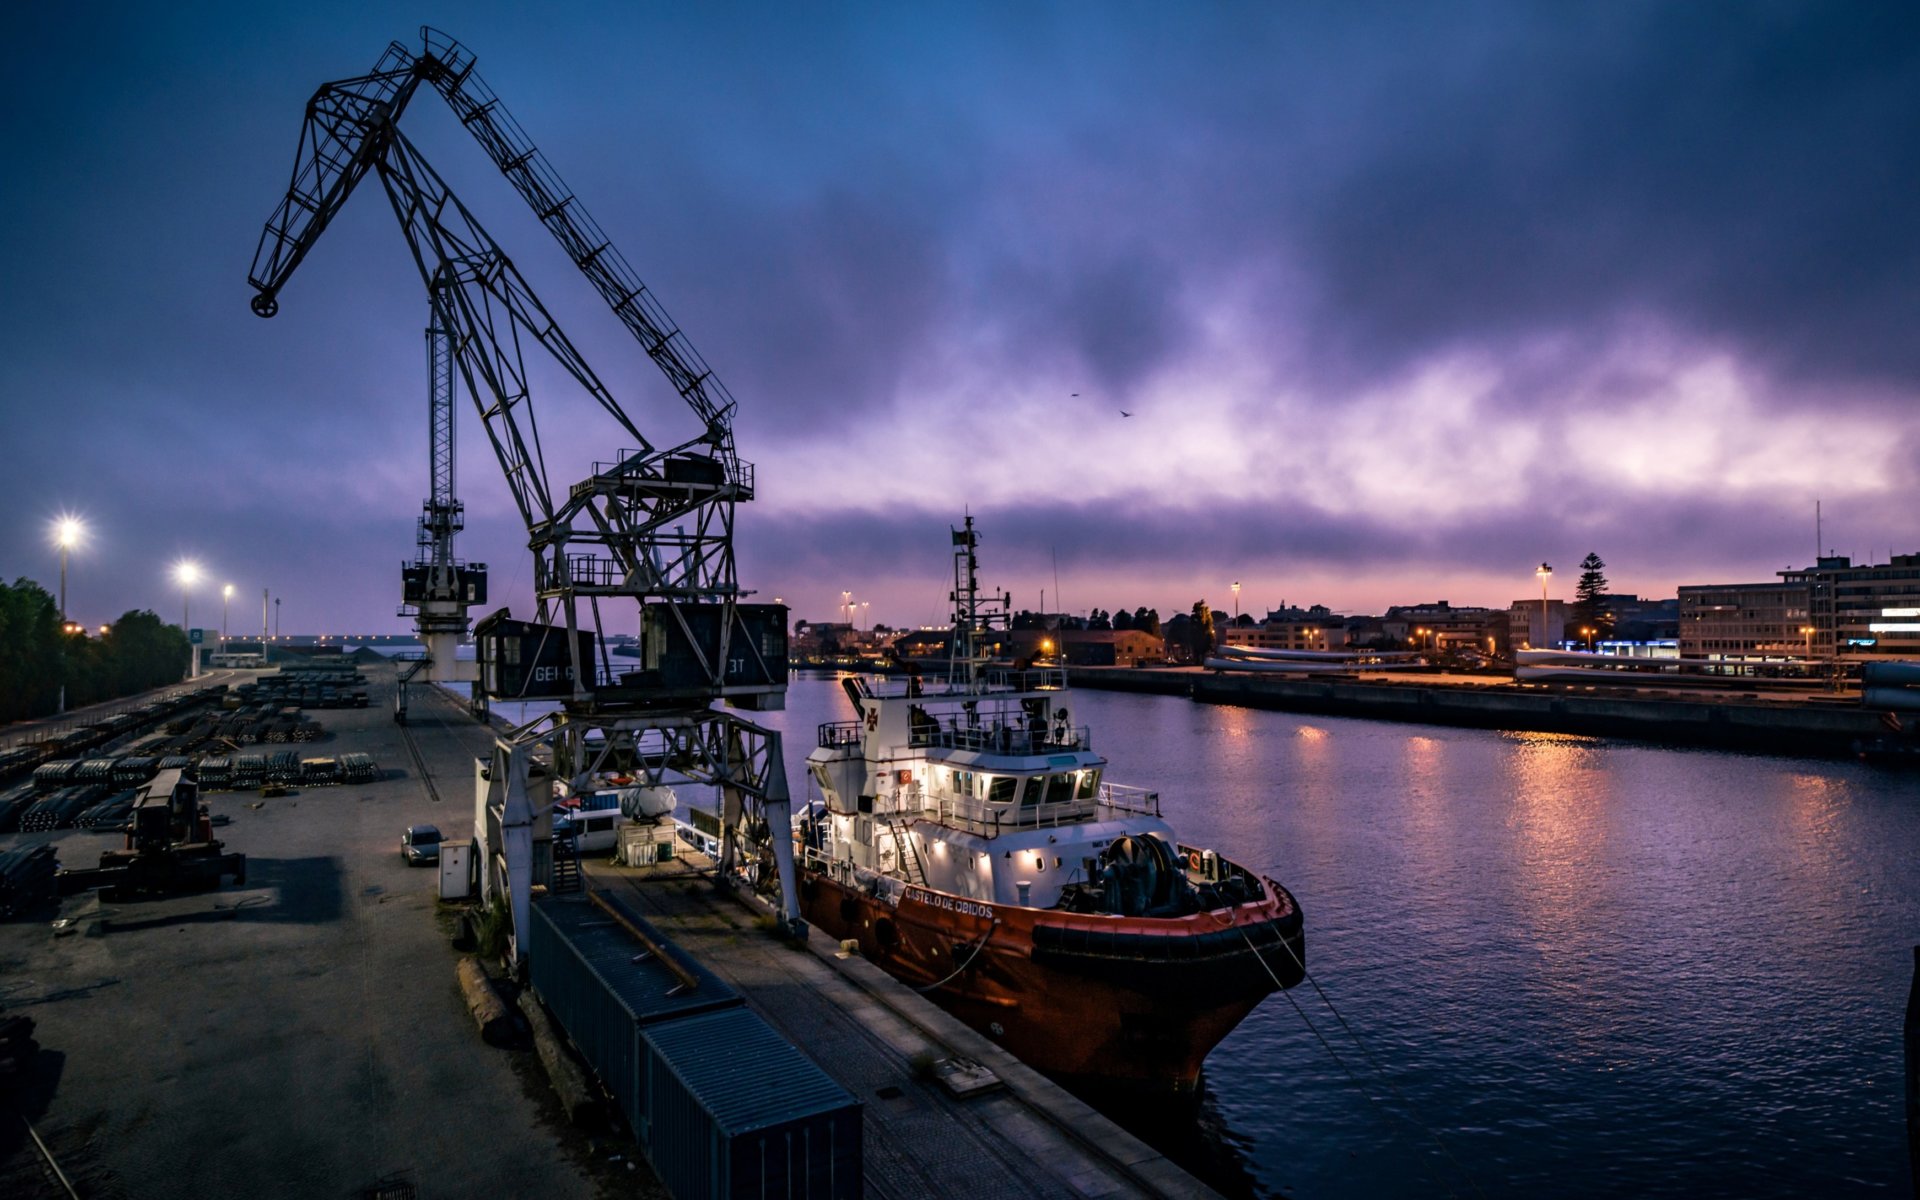 The image shows a cargo ship in the sea trade port of Matosinhos, Porto in Portugal